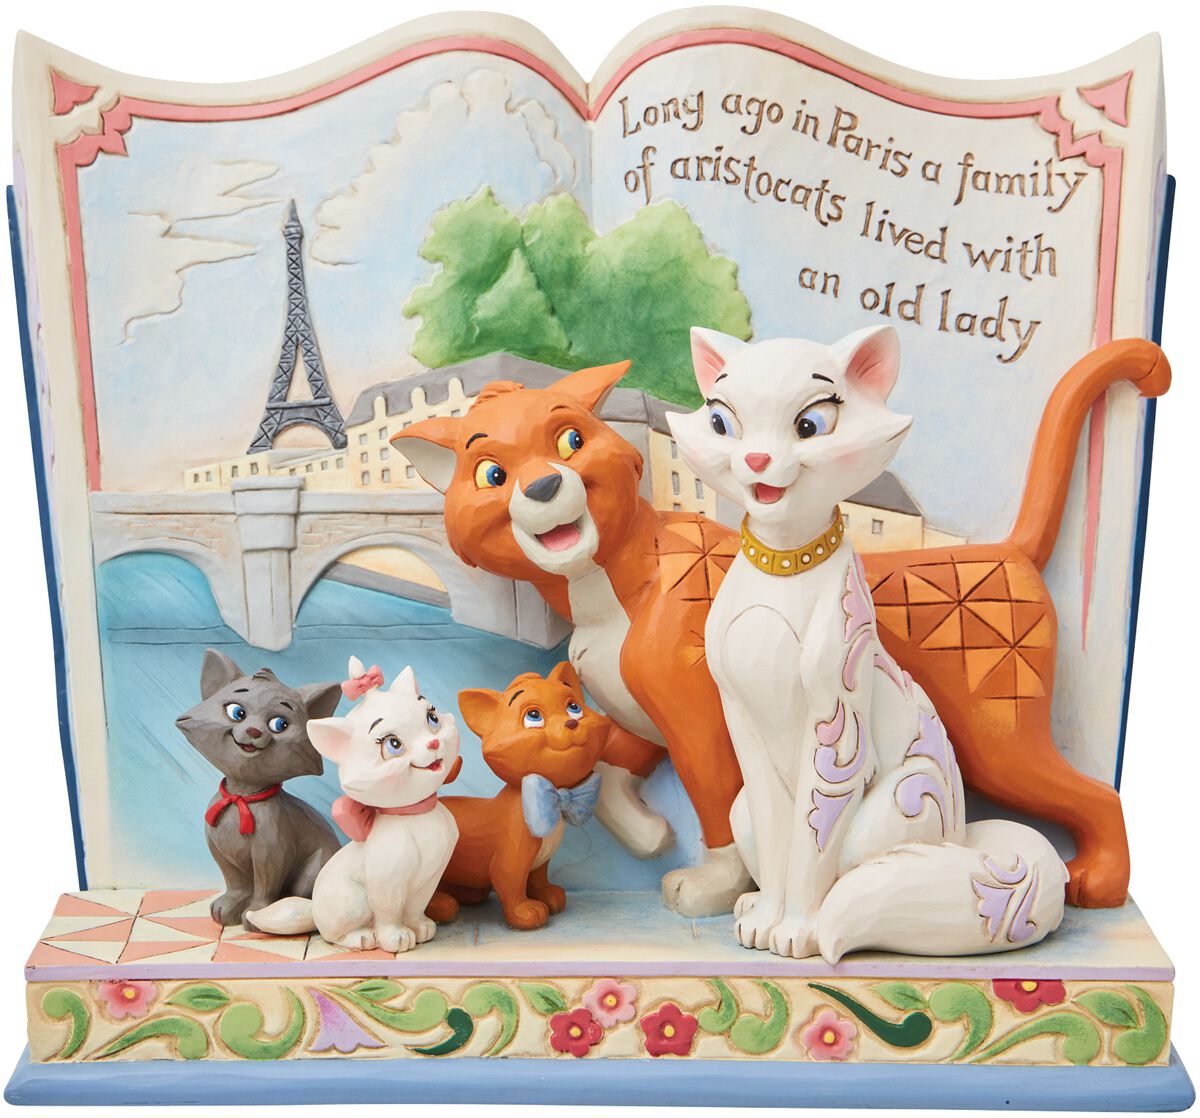 Image of Statuetta Disney di Aristogatti - Long ago in Paris - Aristocats storybook figurine - Unisex - multicolore